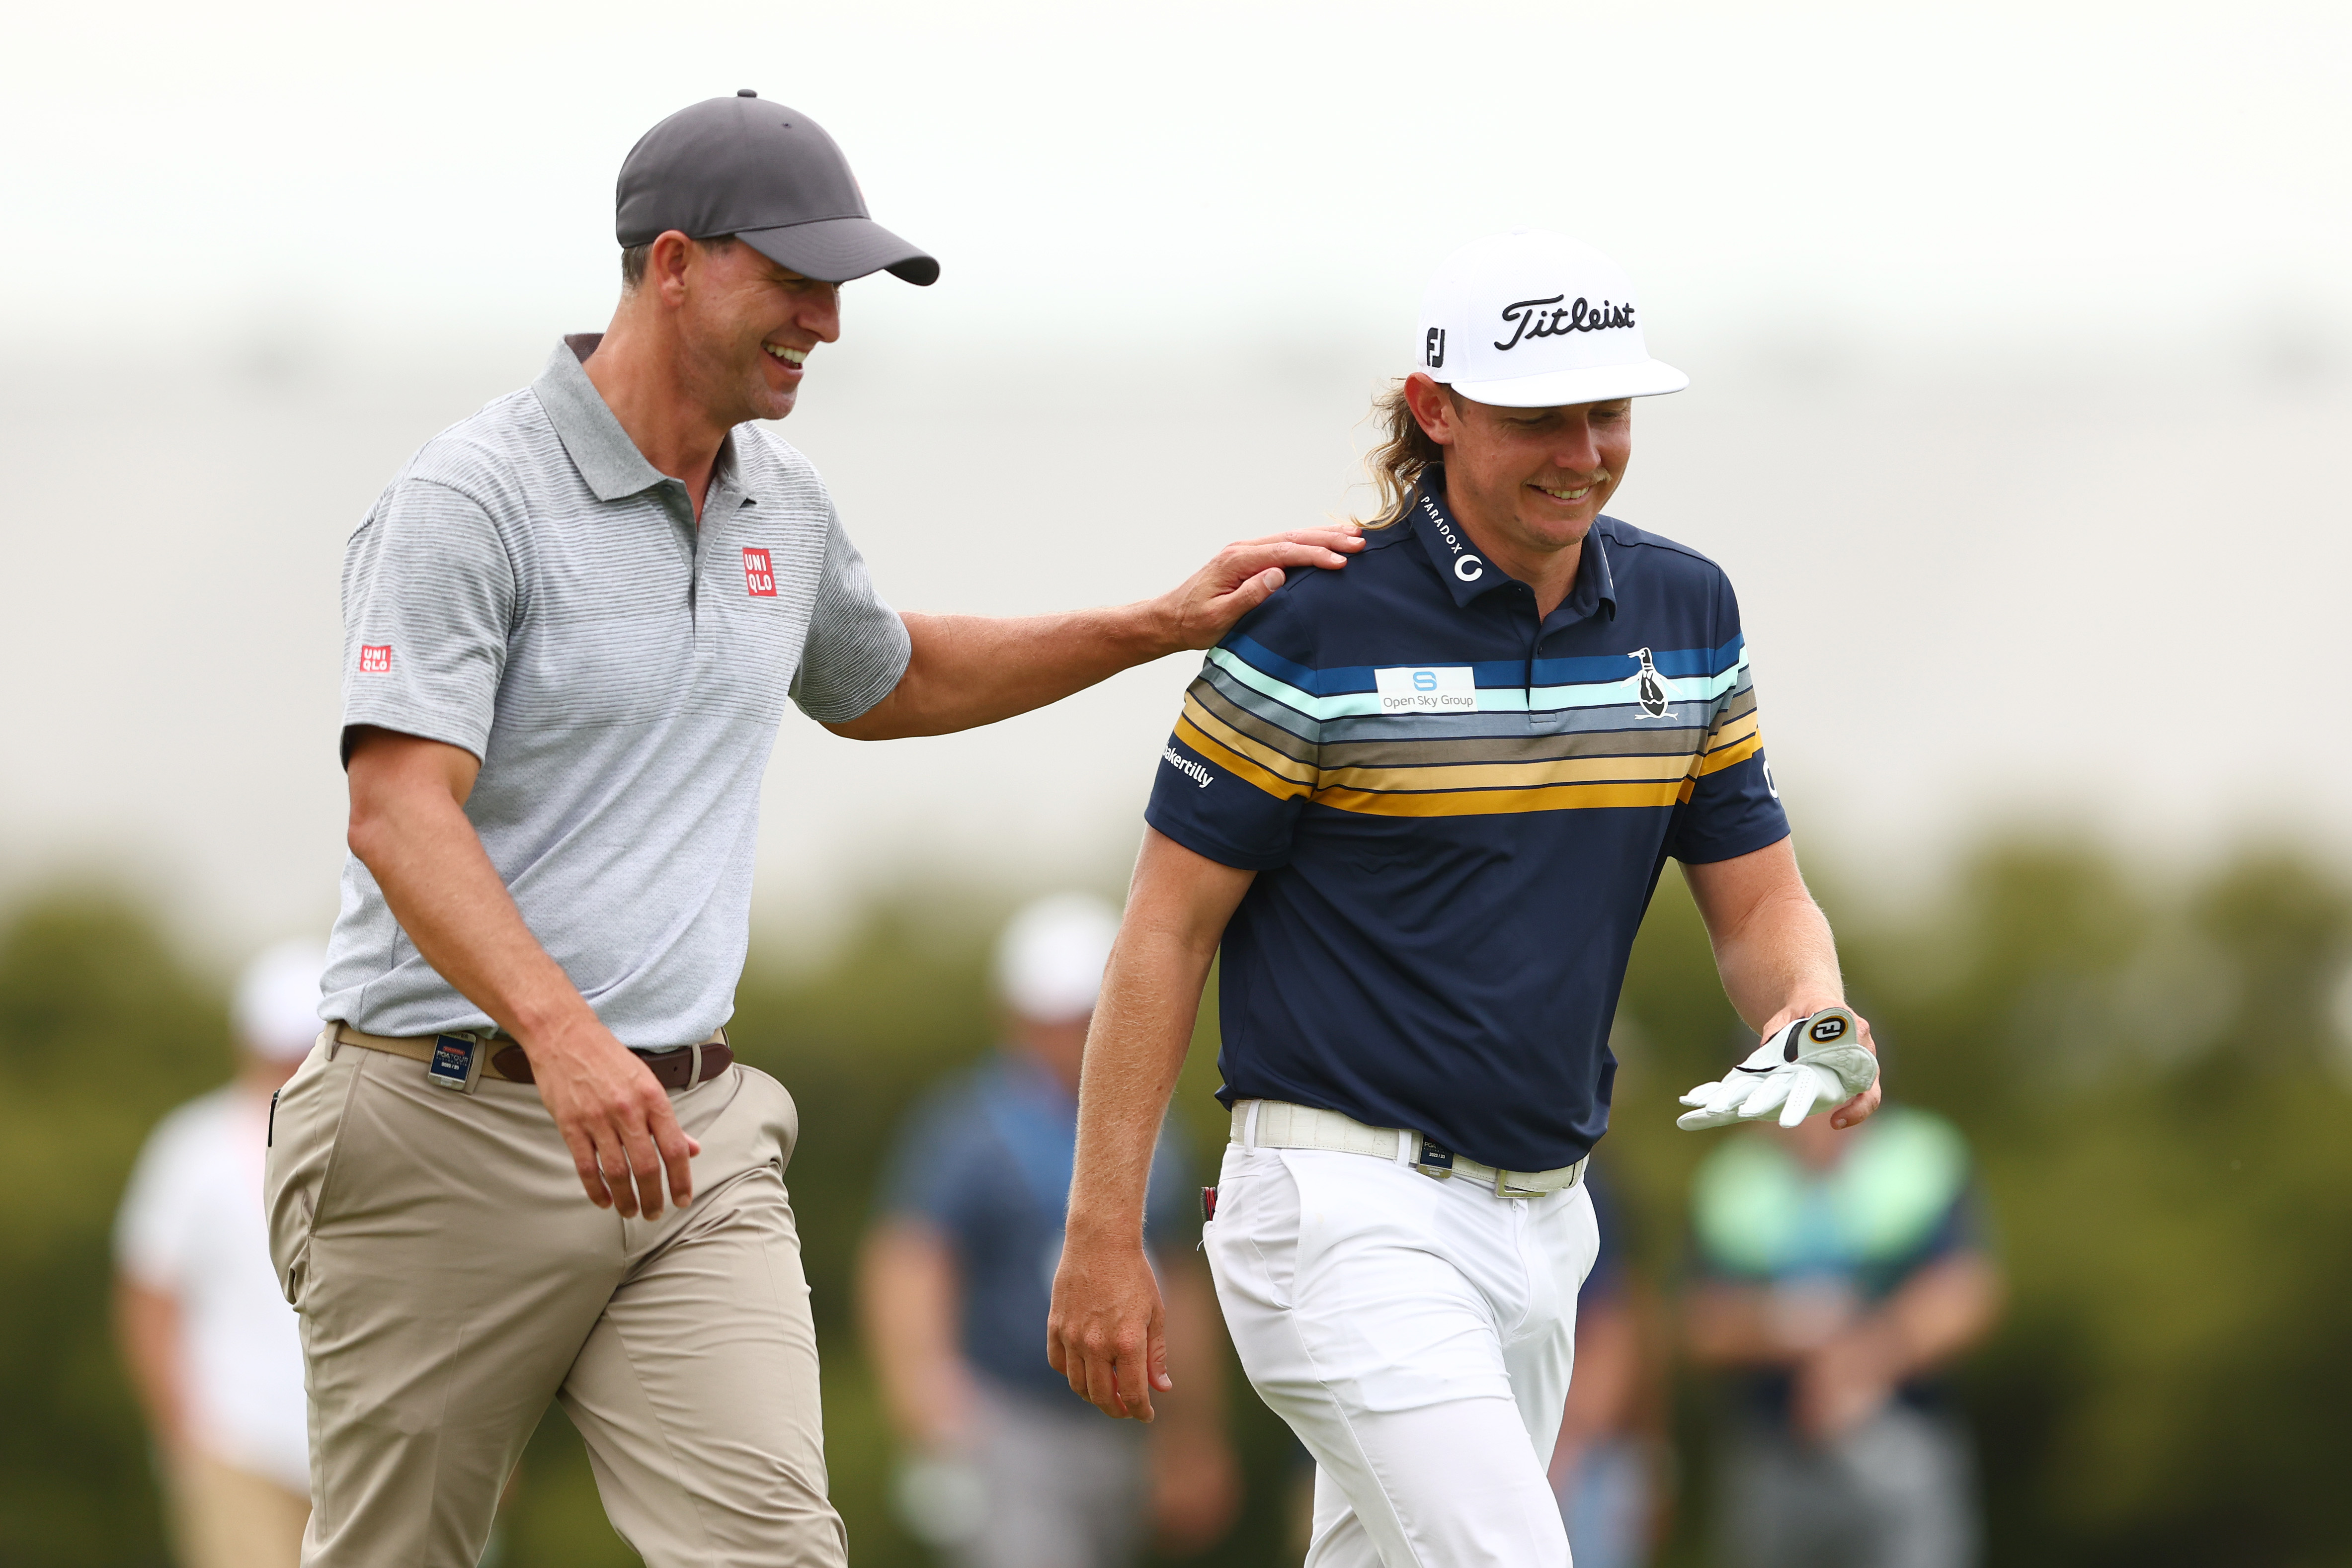 Résultats du championnat australien de la PGA, Adam Scott et Cameron Smith, marquent le premier tour